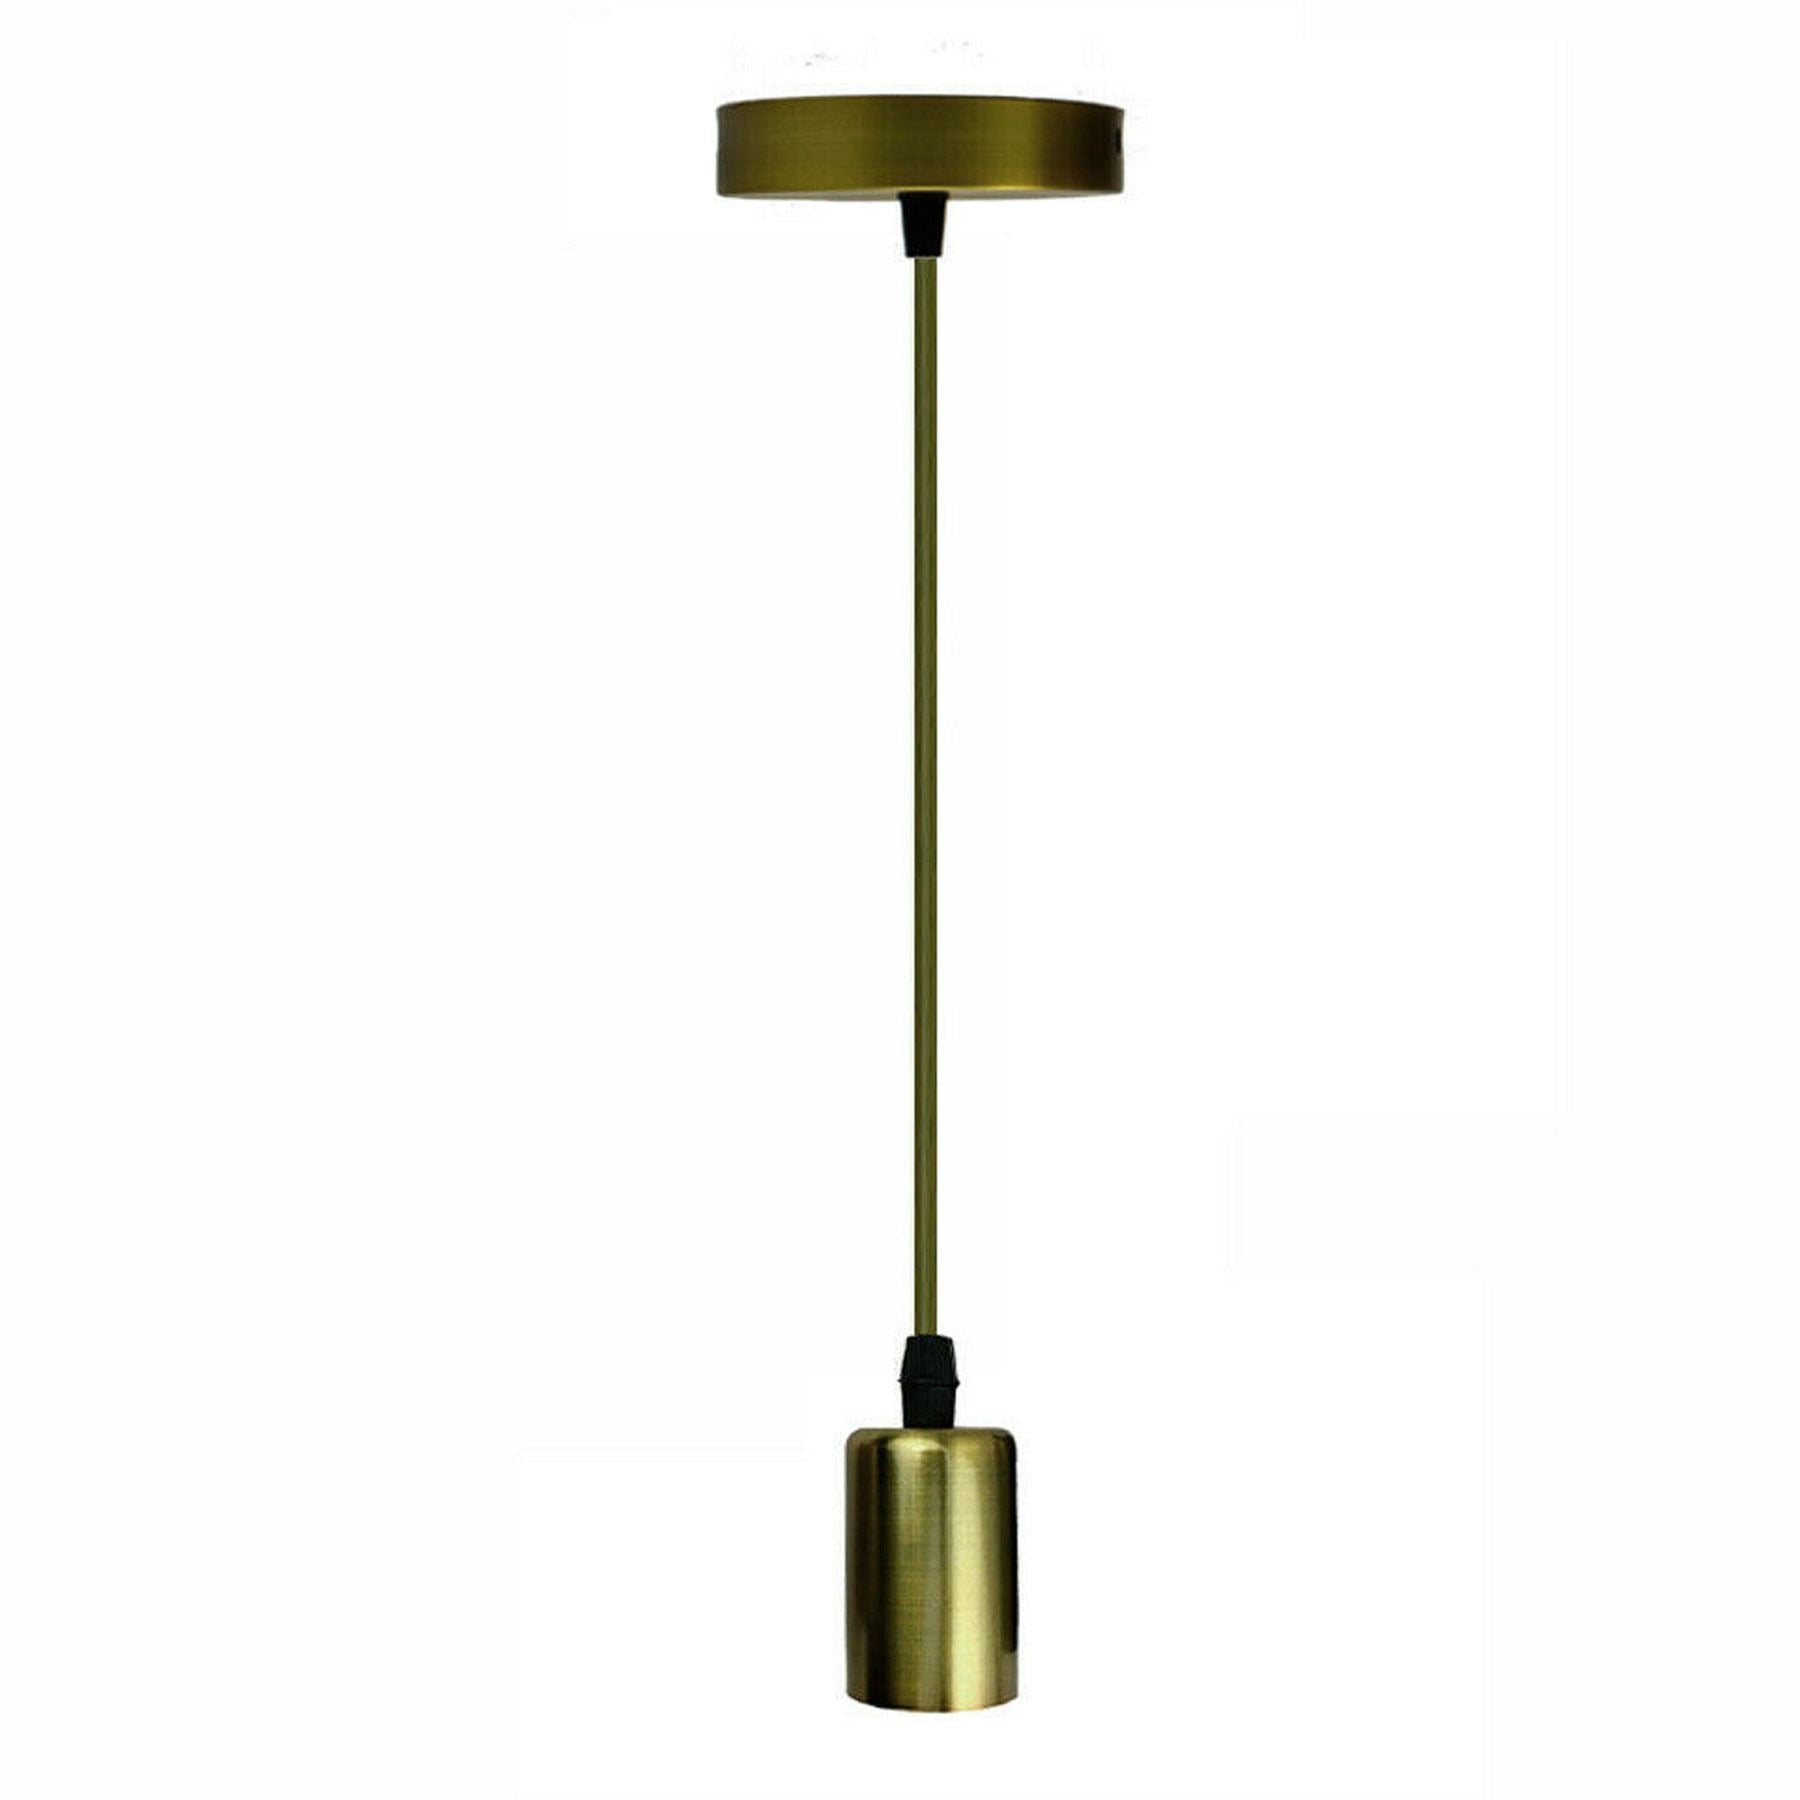 Ceiling Light Bulb Holder Pendant Light Metal E27 Light Bulb Holders for Living Room, Dining Room and Kitchen Island~1294 - LEDSone UK Ltd